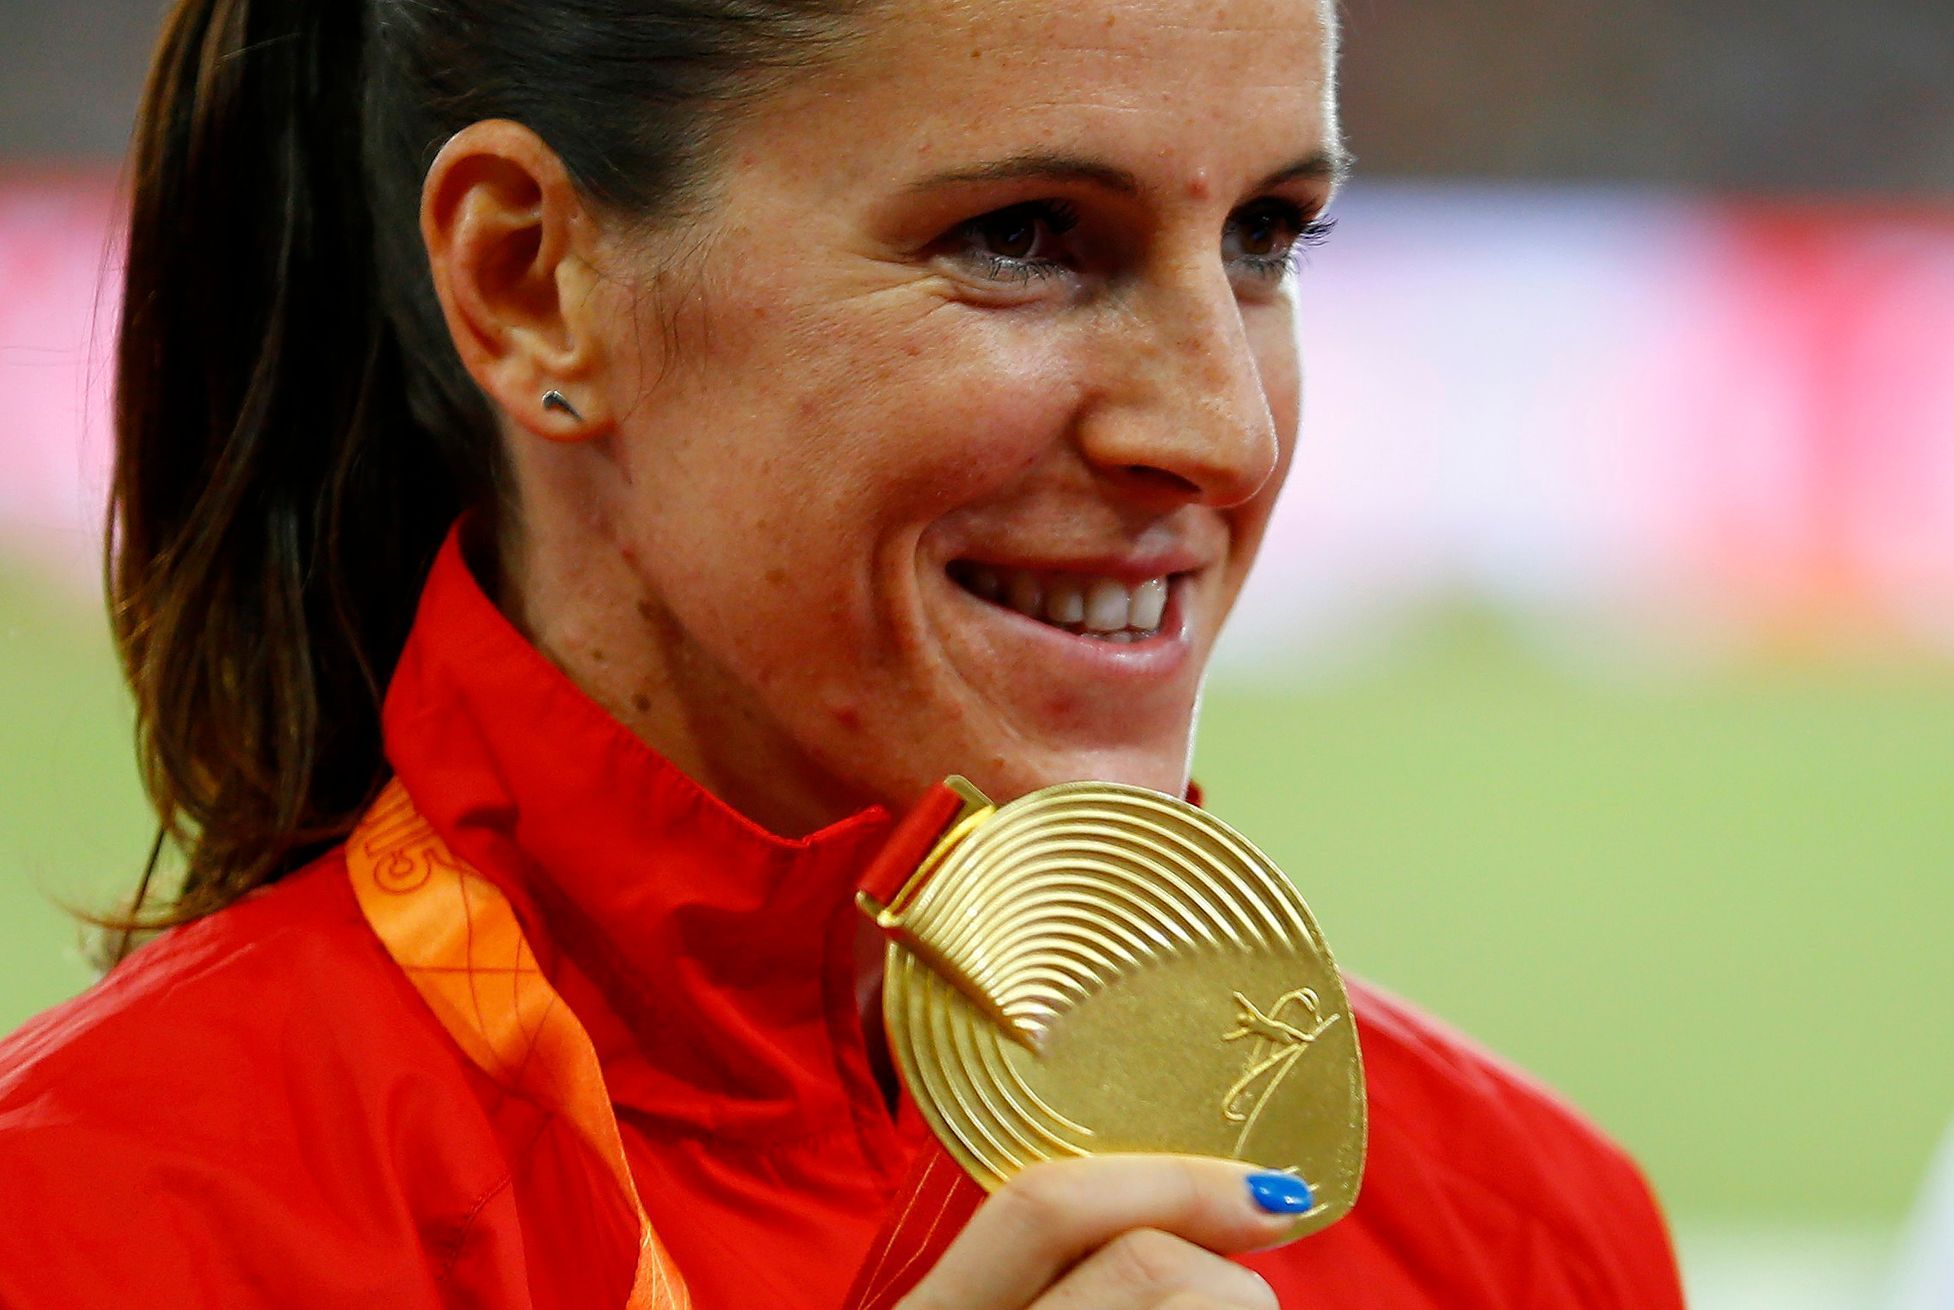 MS 2015, 400 m př.: Zuzana Hejnová se zlatou medailí